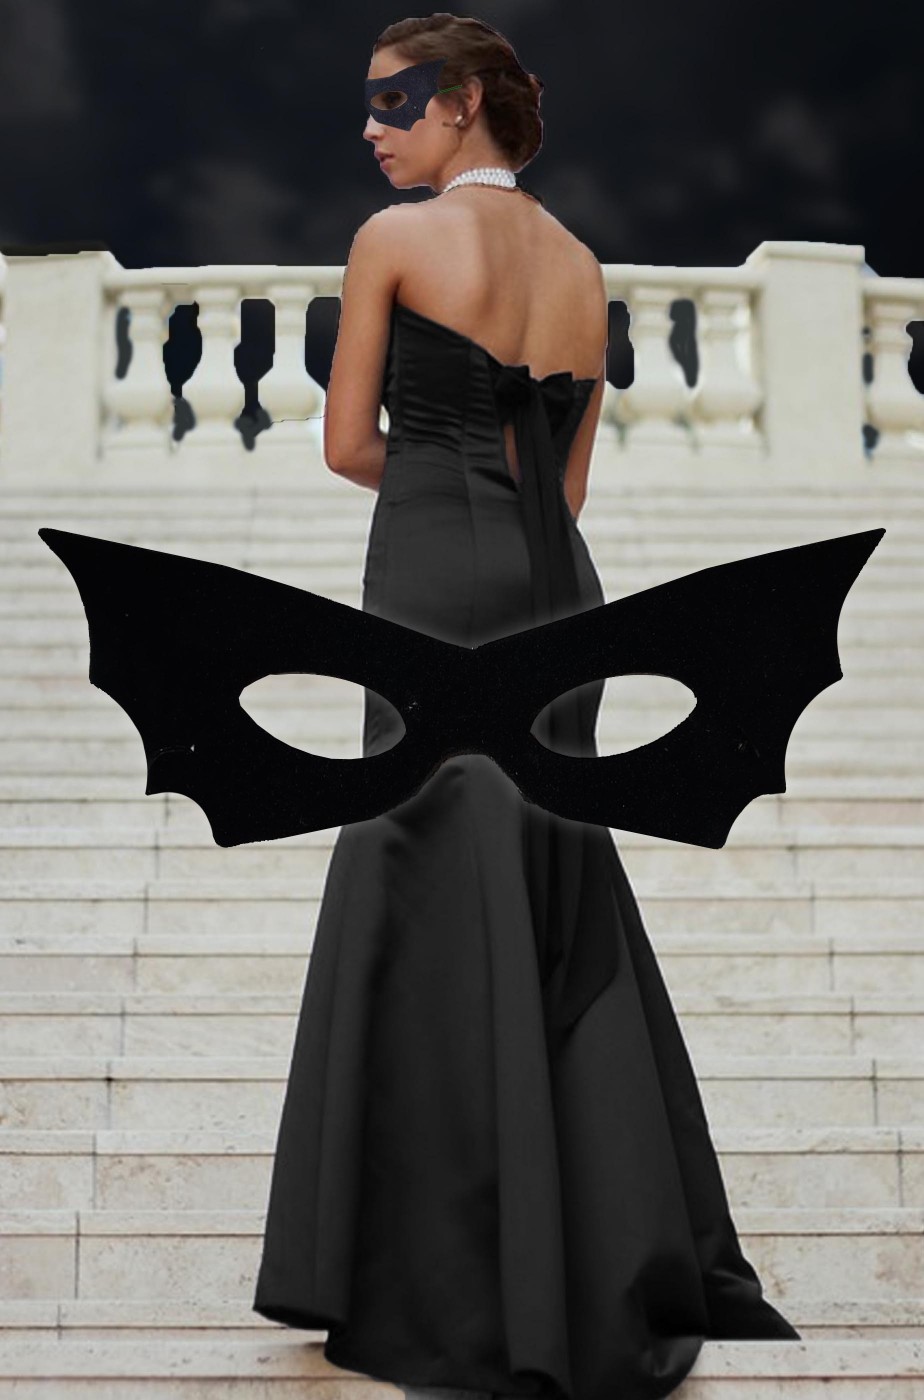 Maschera di carnevale o halloween nera ad ali di pipistrello